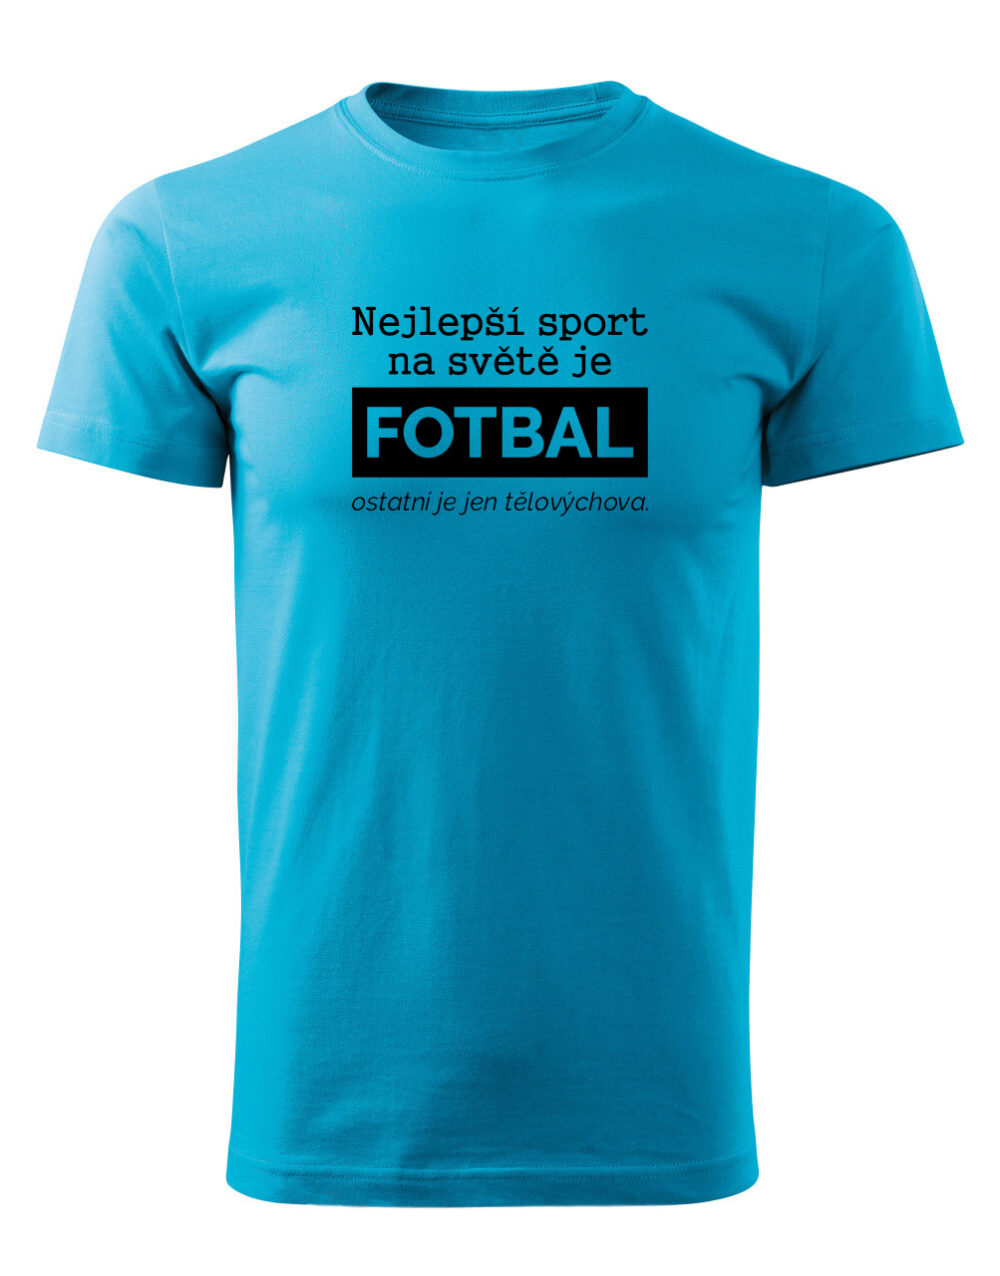 Pánské tričko s potiskem Nejlepší sport je fotbal tyrkysová